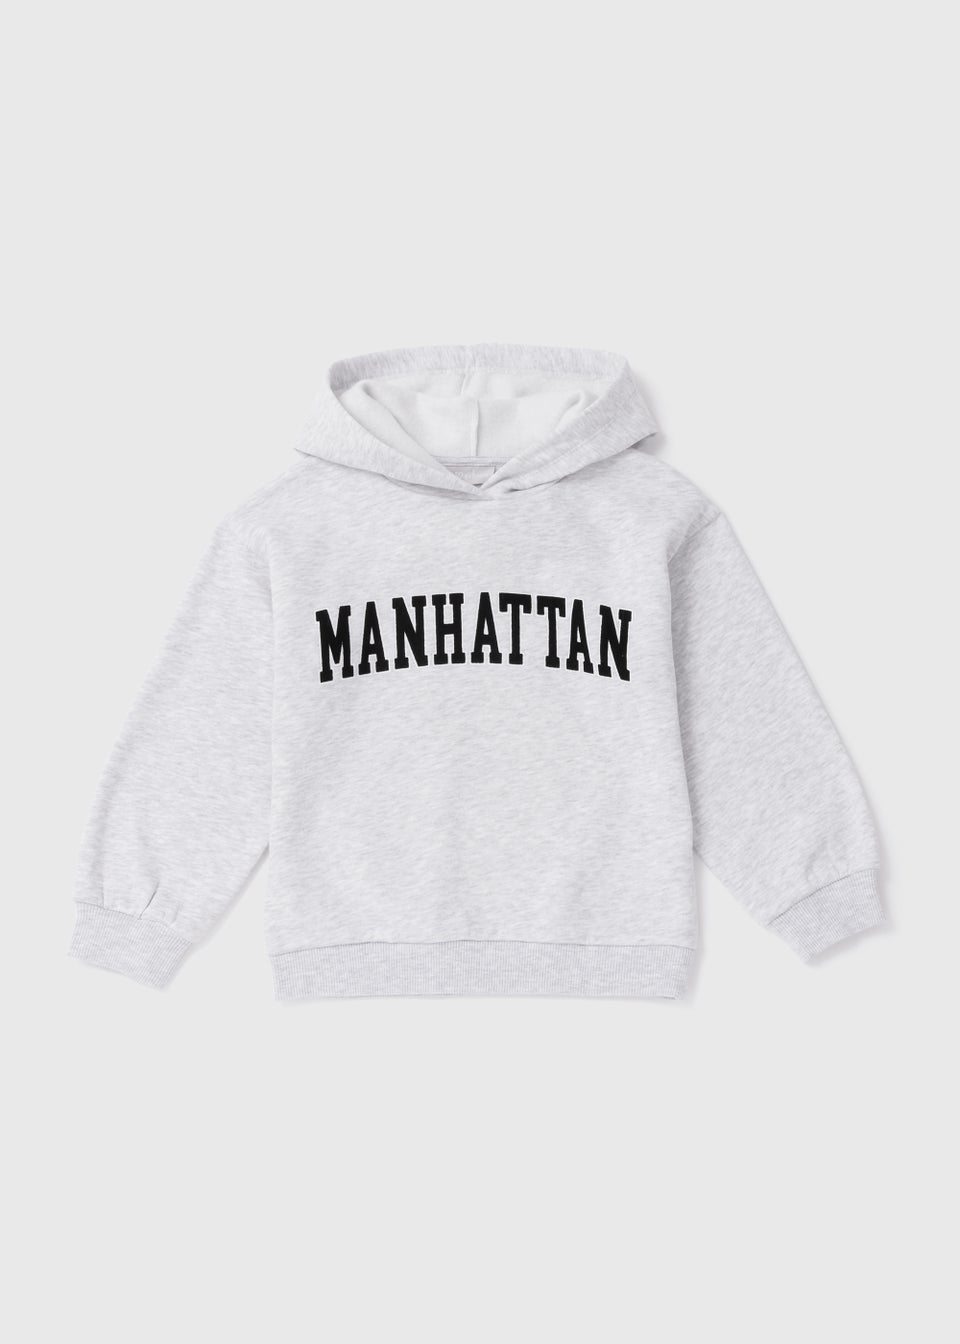 Girls Hoodies & Sweatshirts | Oversized & Fleece – Matalan